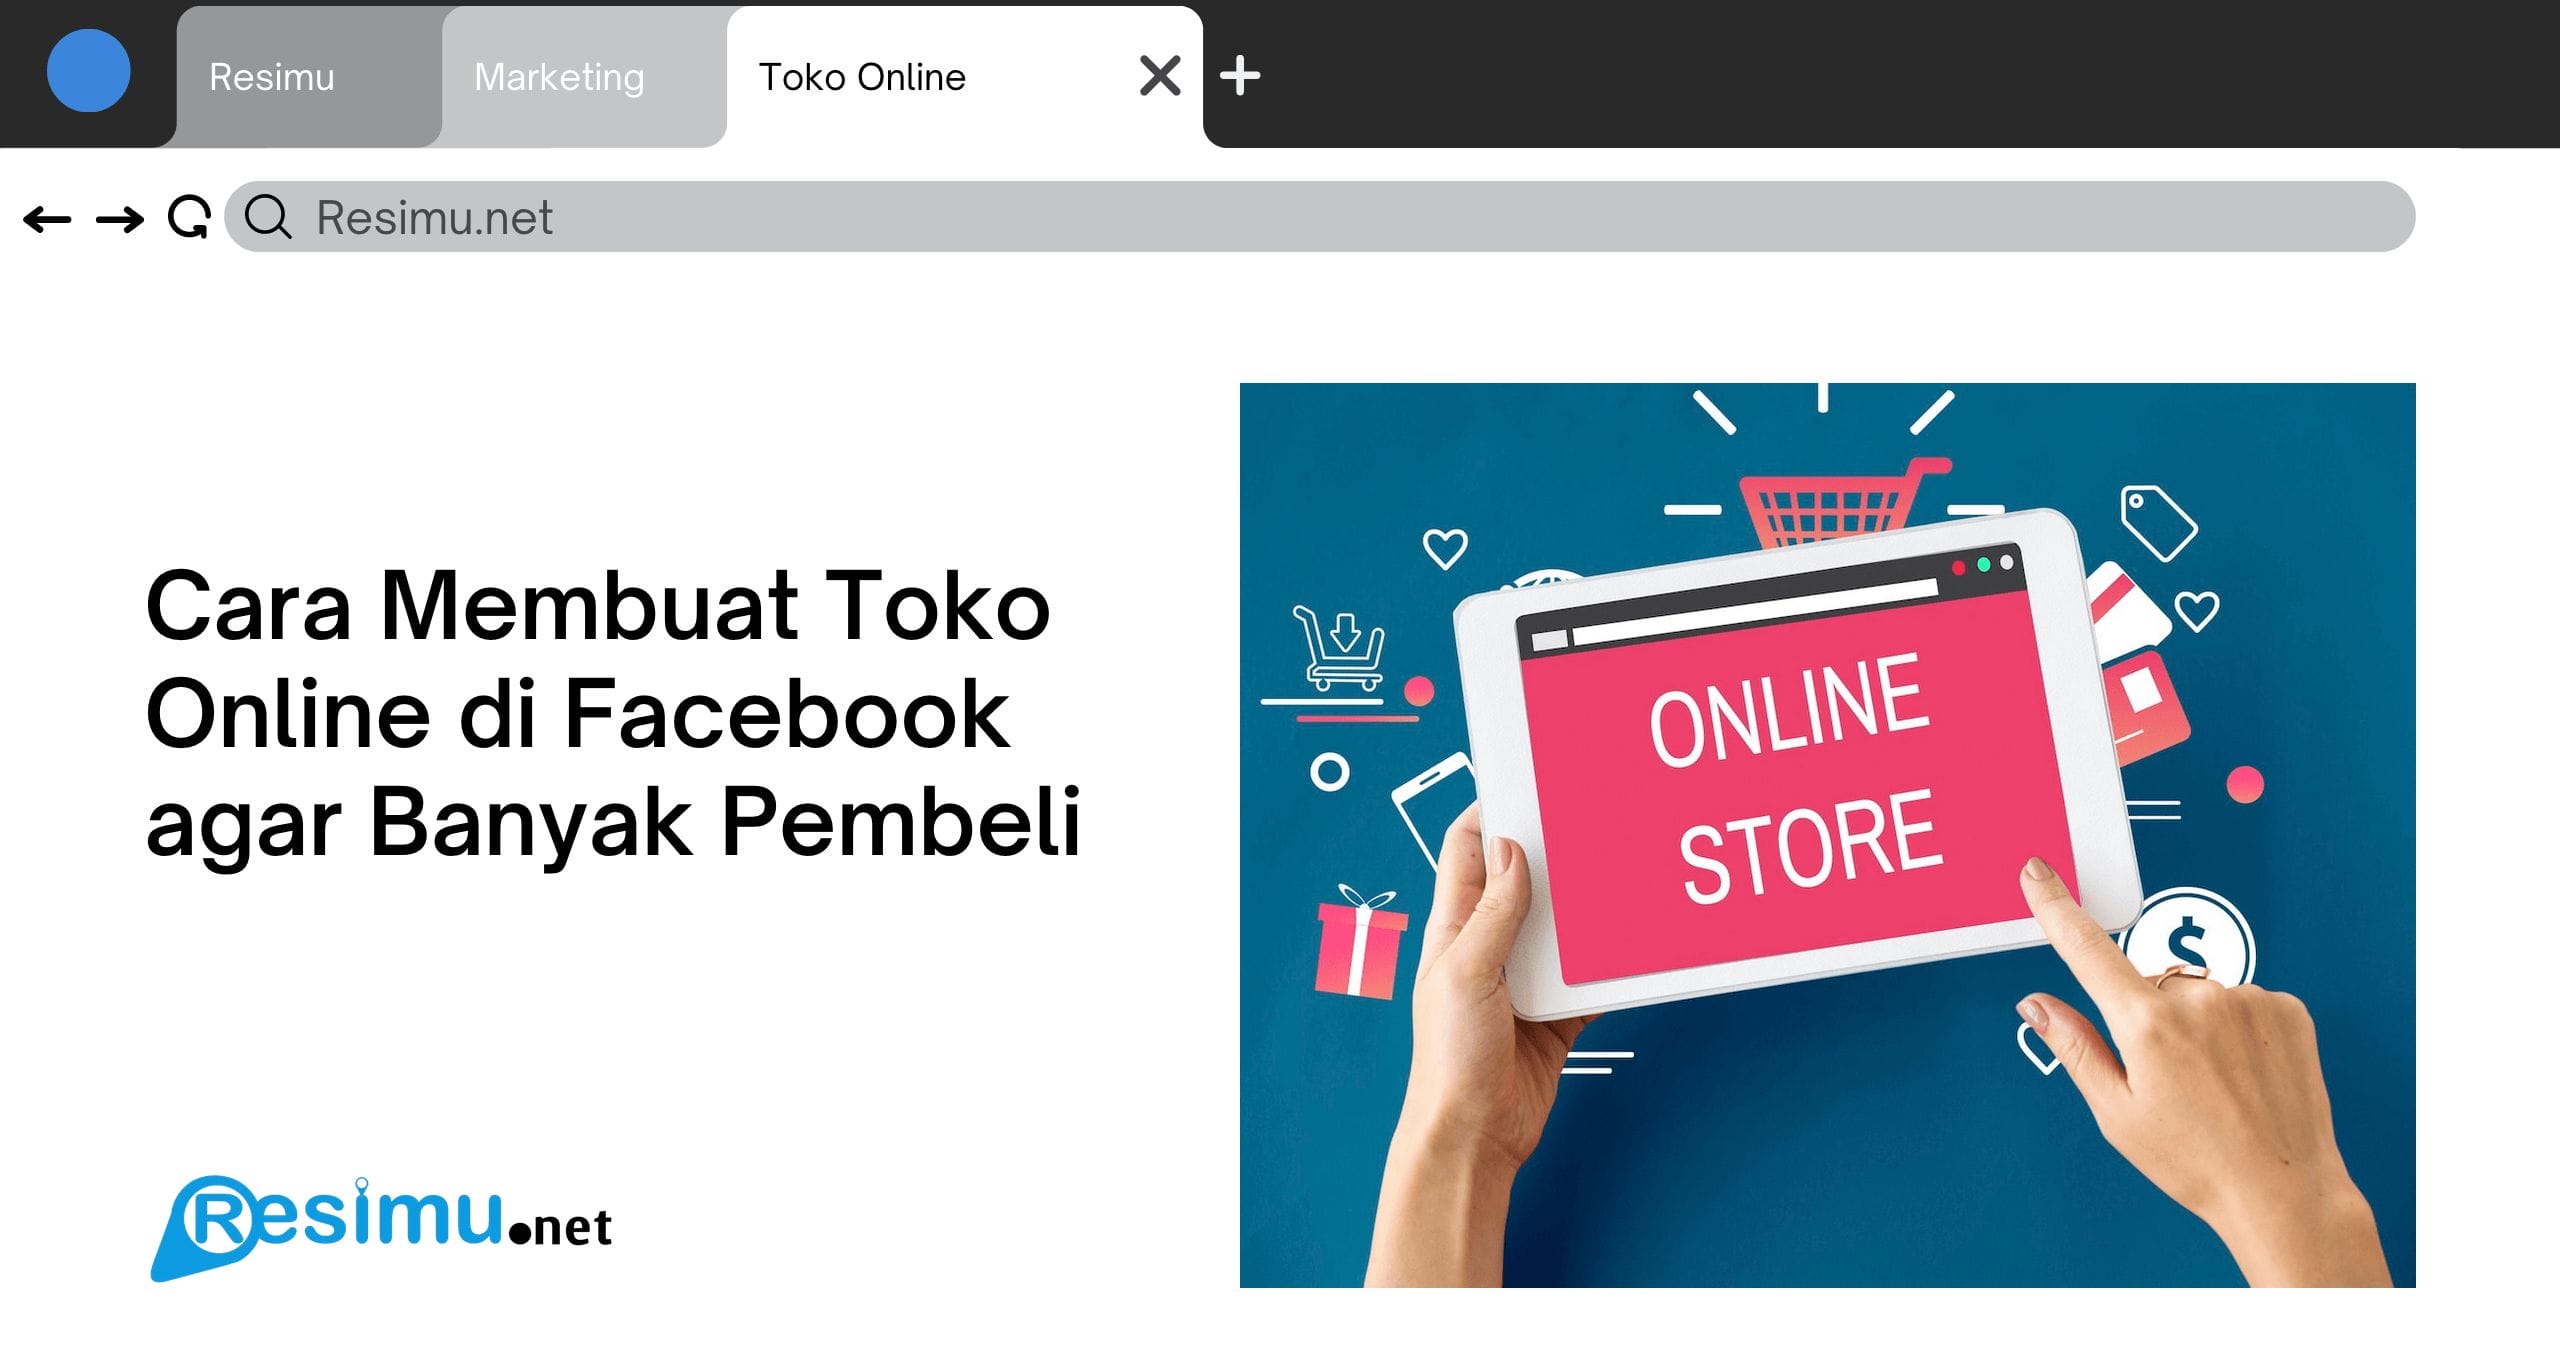 Cara Membuat Toko Online di Facebook agar Banyak Pembeli